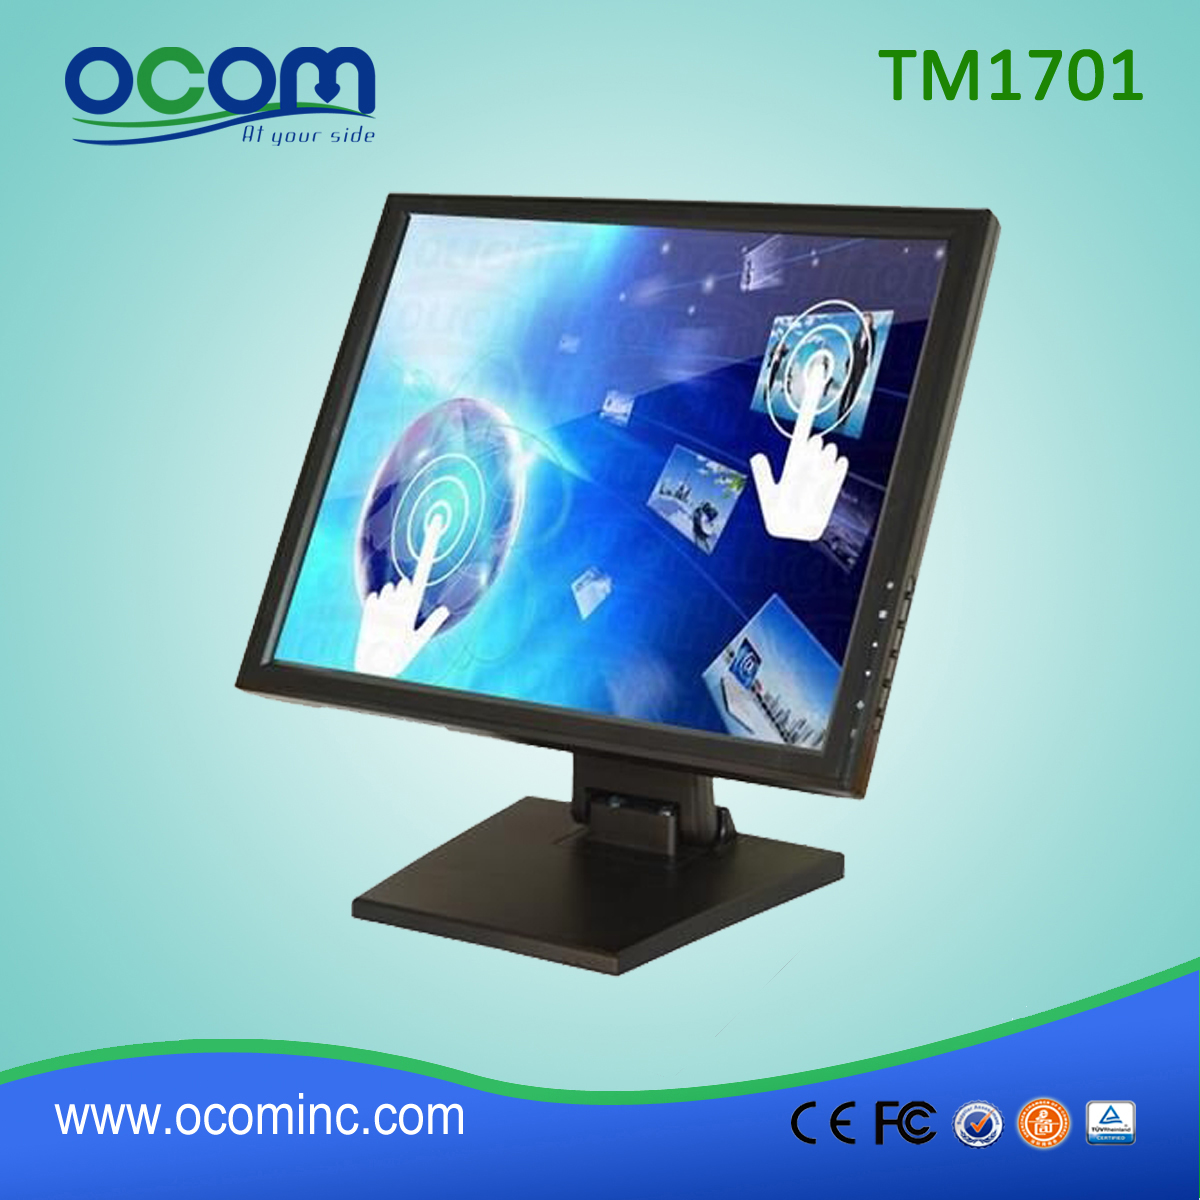 TM1702 17-calowy ekran dotykowy LCD ze składaną podstawą